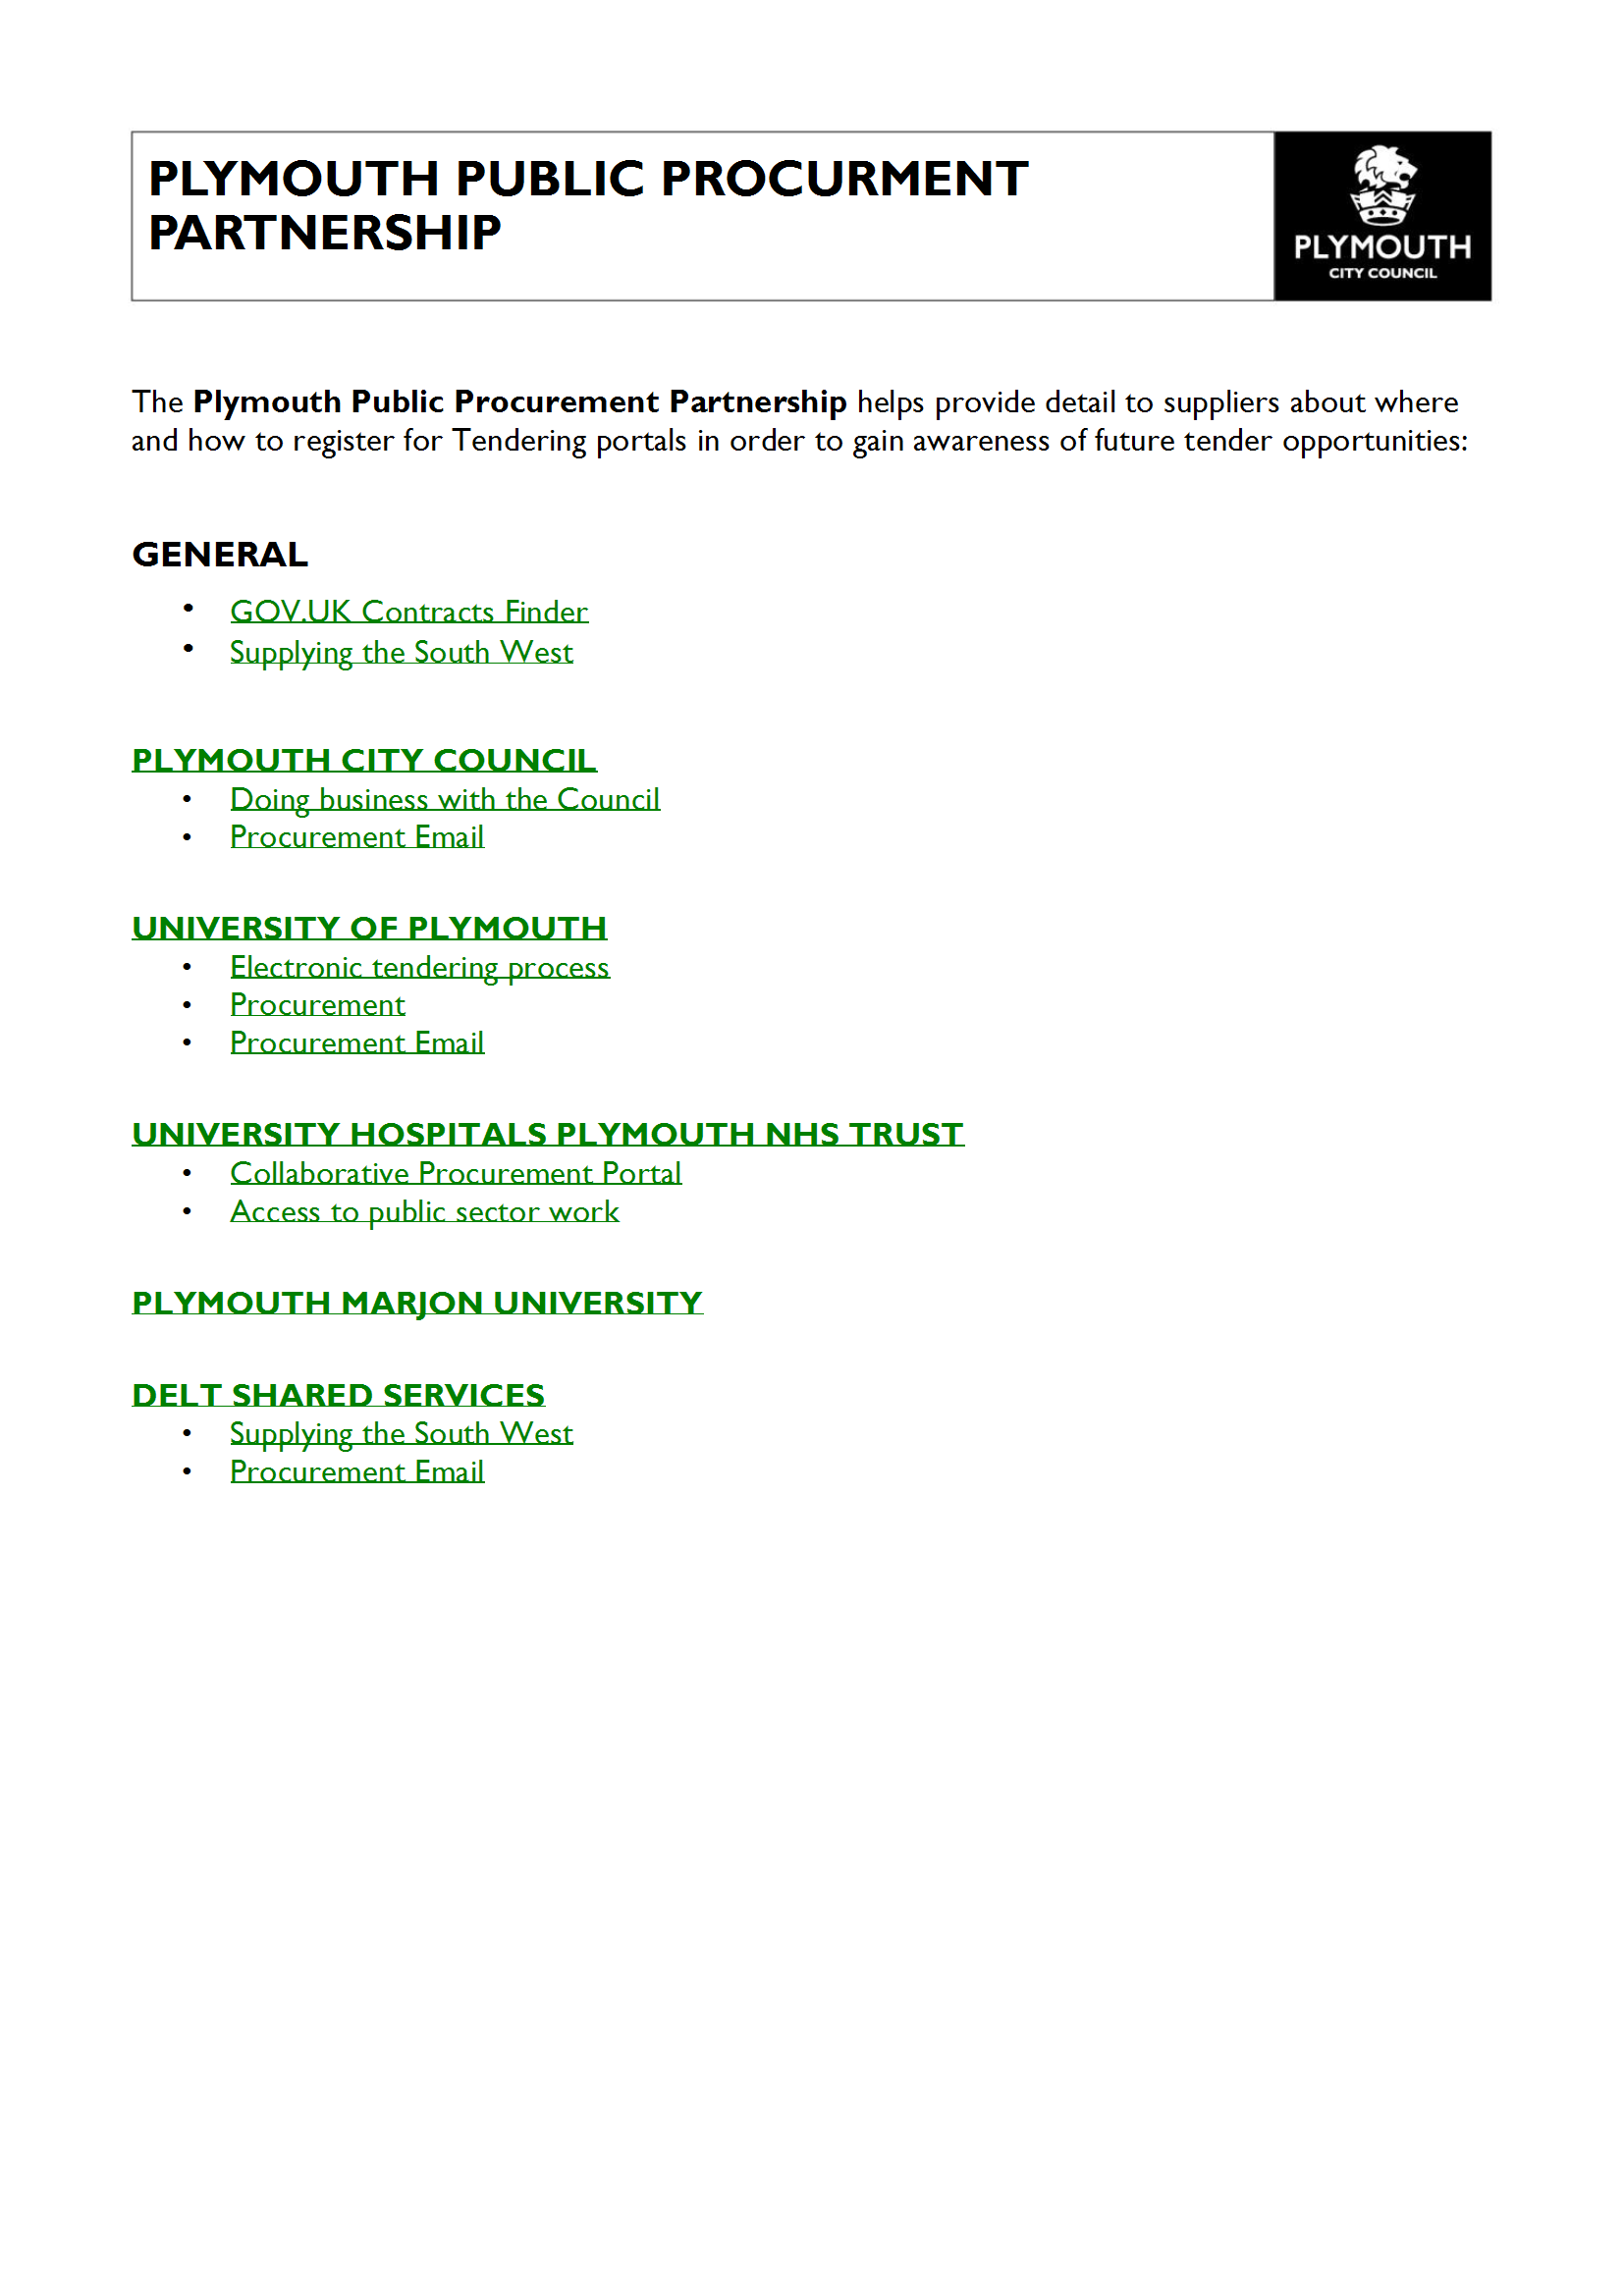 Plymouth Public Procurement Partnership